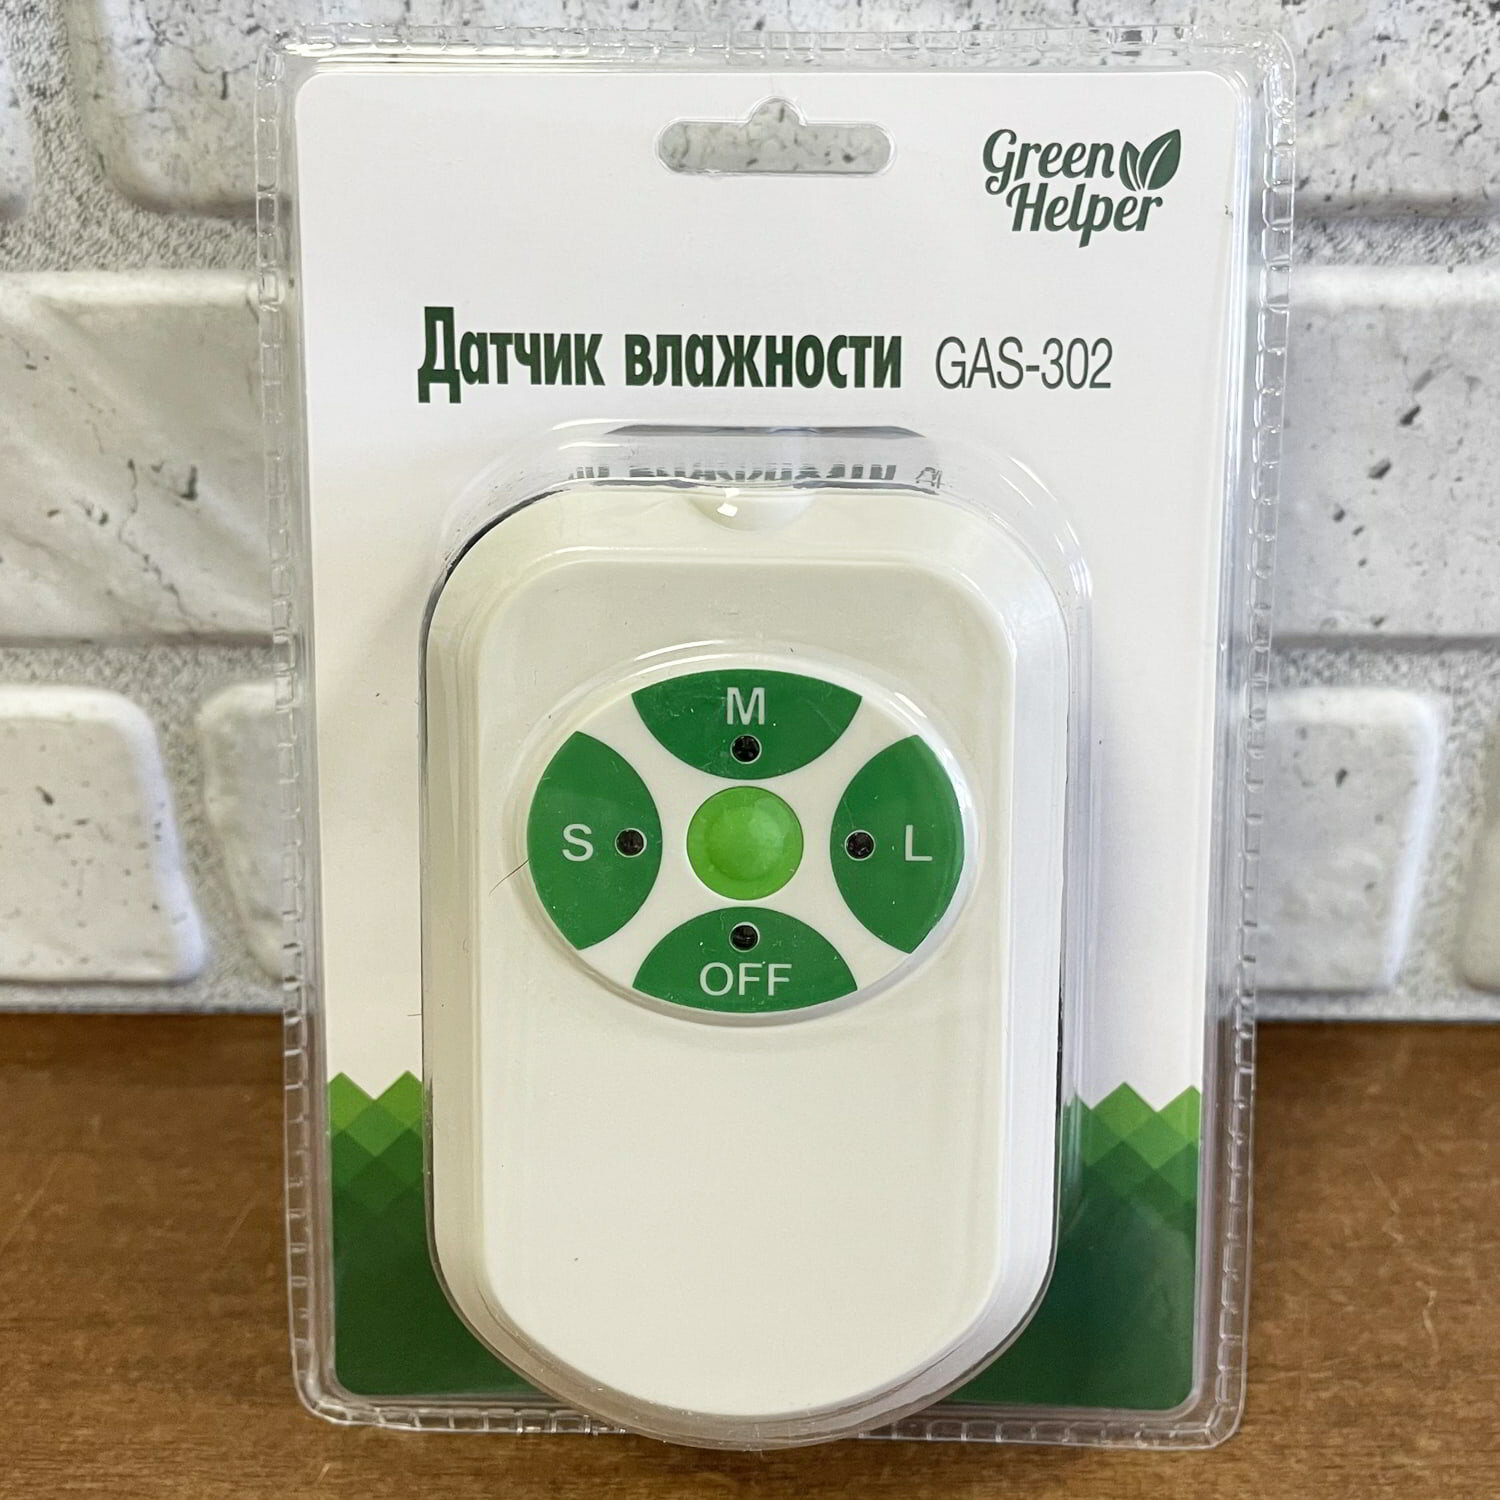 Датчик влажности почвы Green Helper GAS-302 v. H24 (проверка влажности раз в минуту, порог срабатывания 25, 45 или 65%, кабель 5 м)